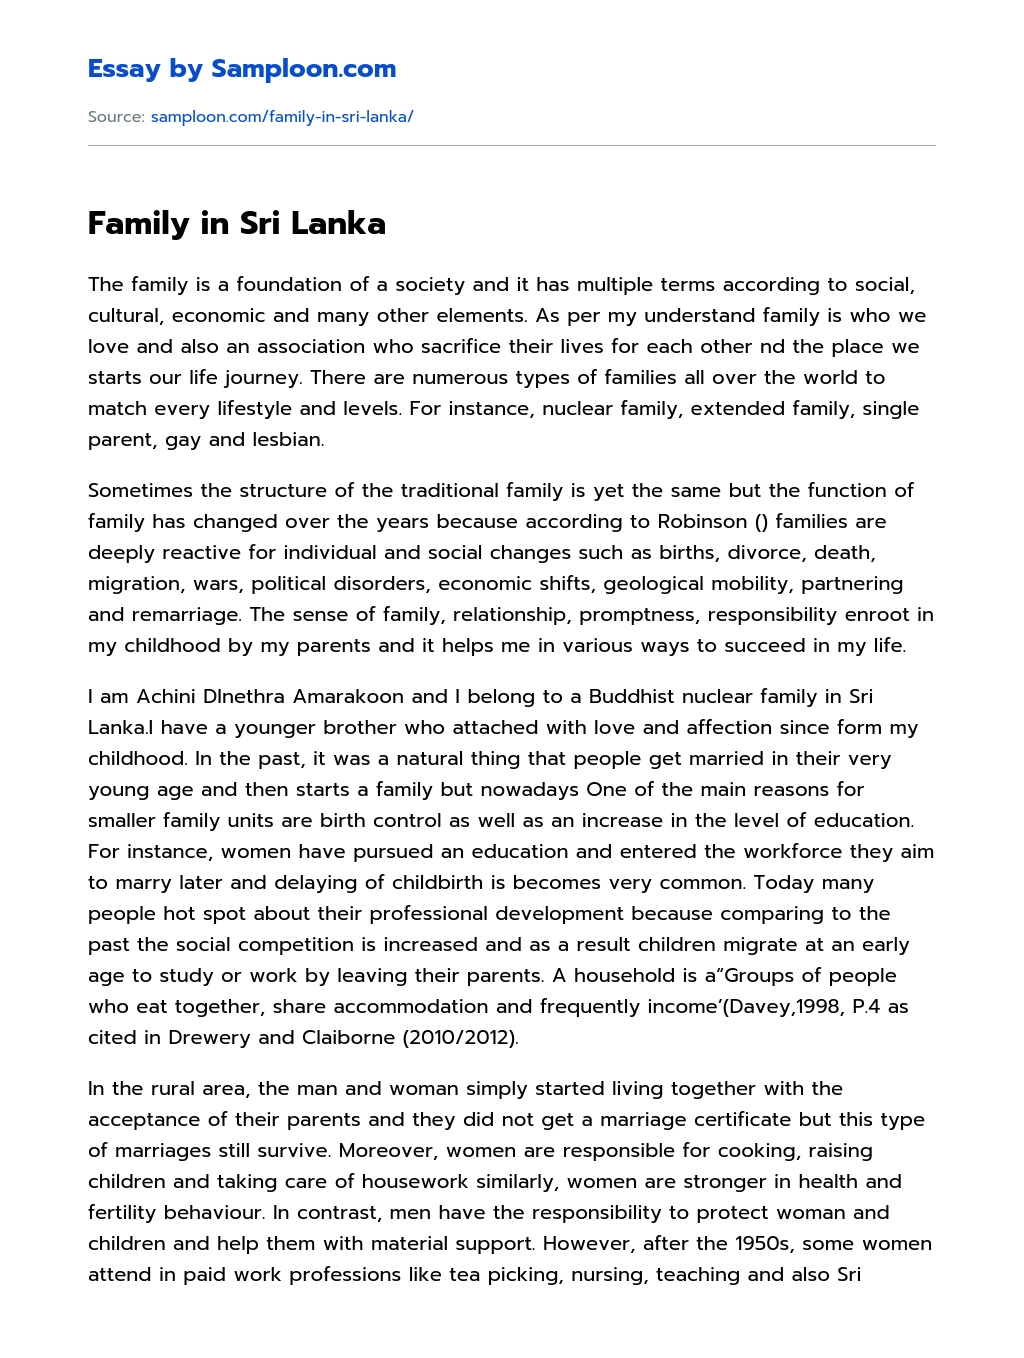 Family in Sri Lanka essay